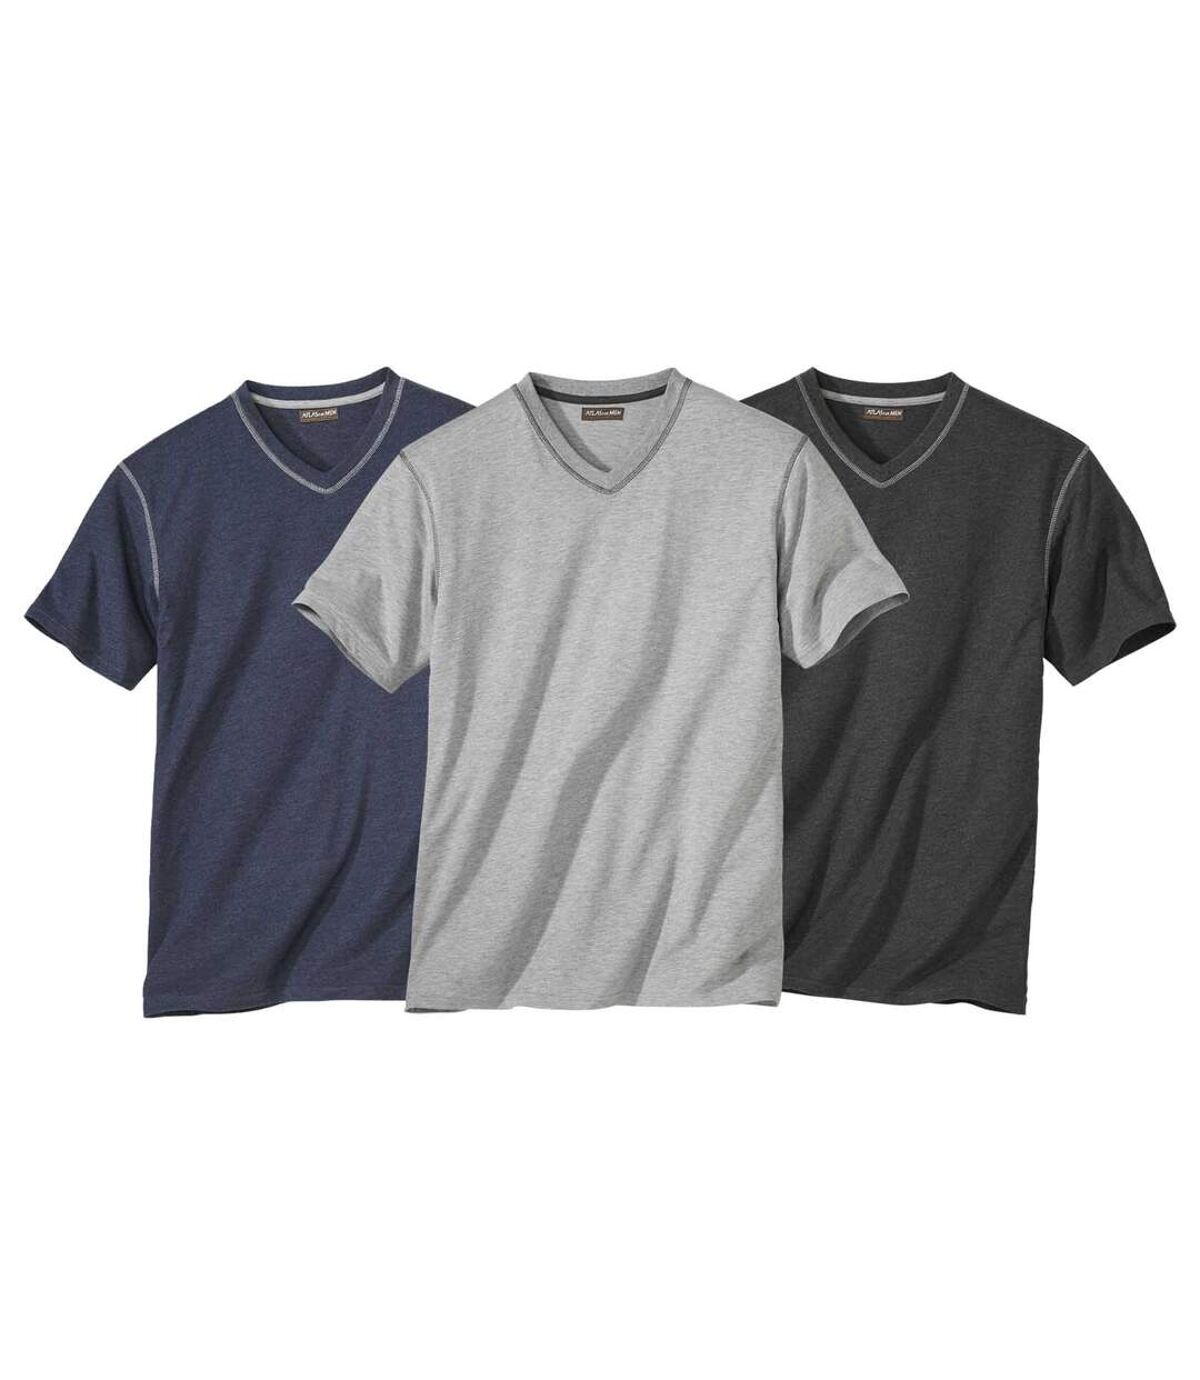 Pack of 3 Men's V-Neck T-Shirts - Gray Navy Charcoal Atlas For Men